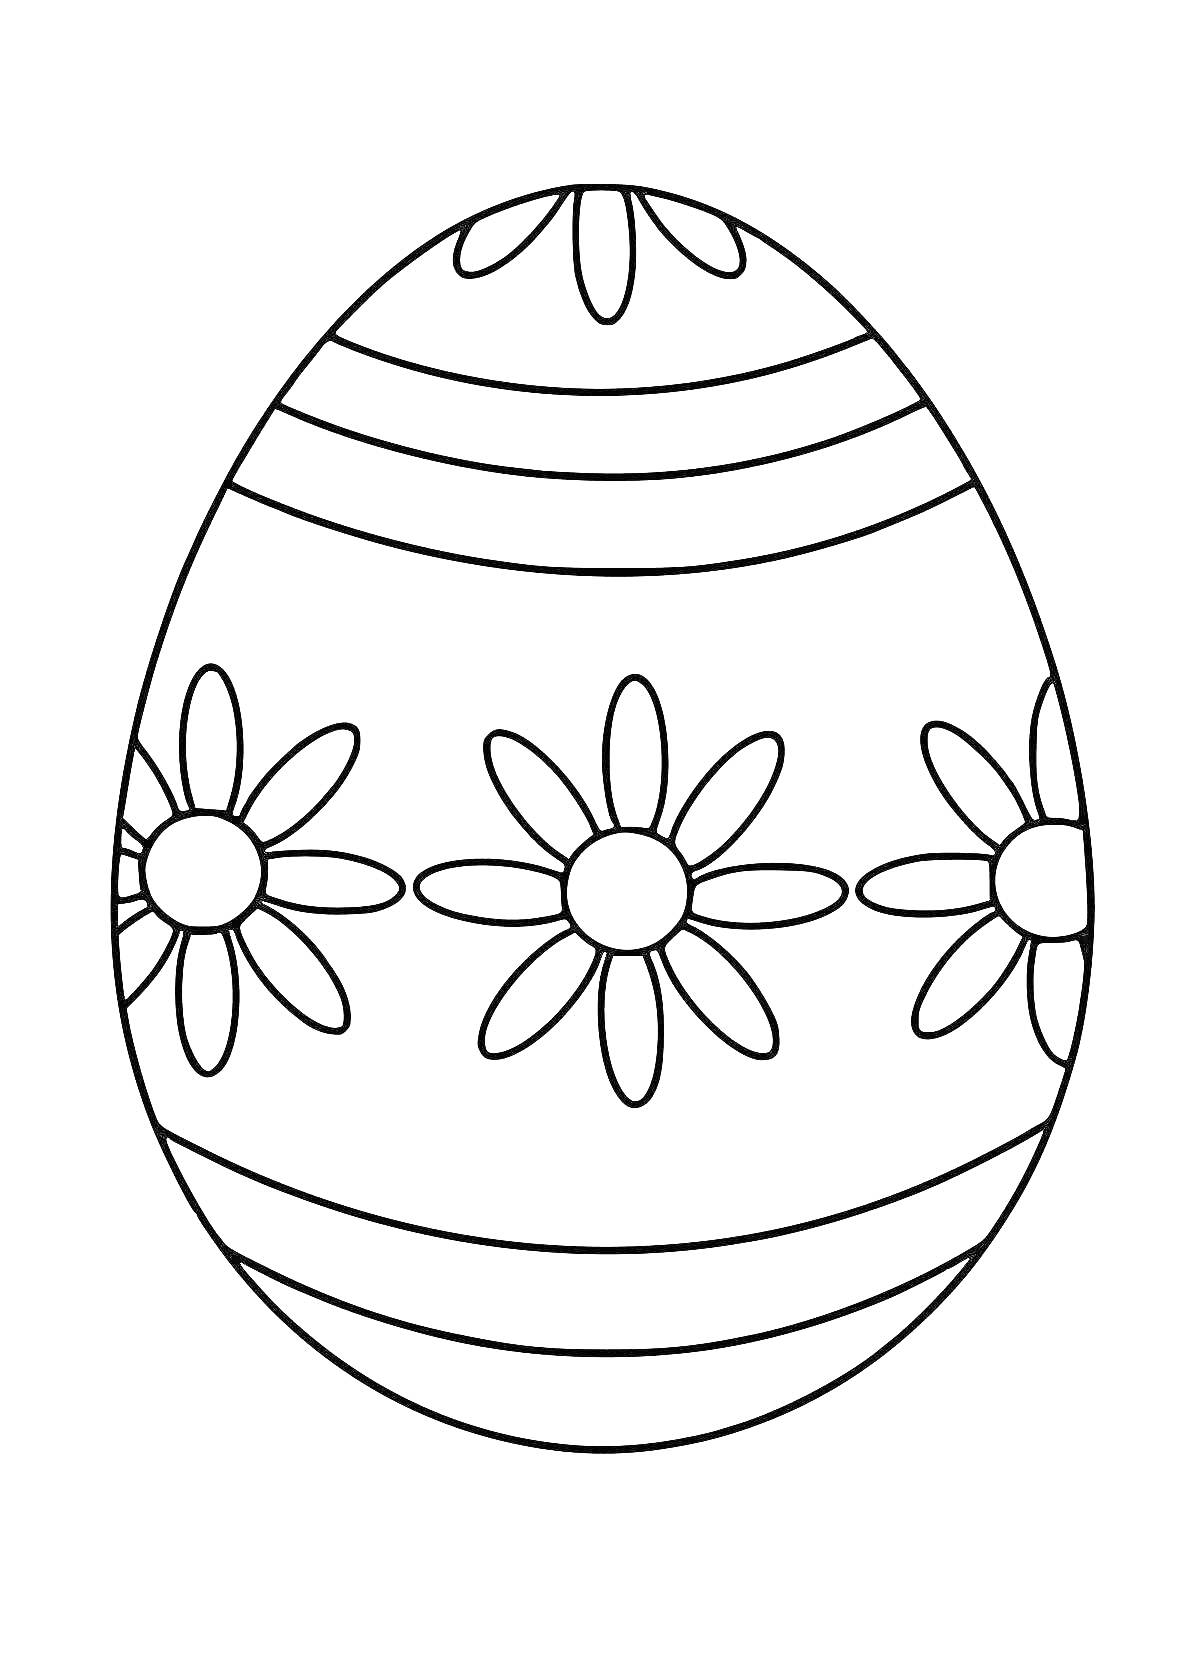 Раскраска Пасхальное яйцо с цветочным узором и полосками